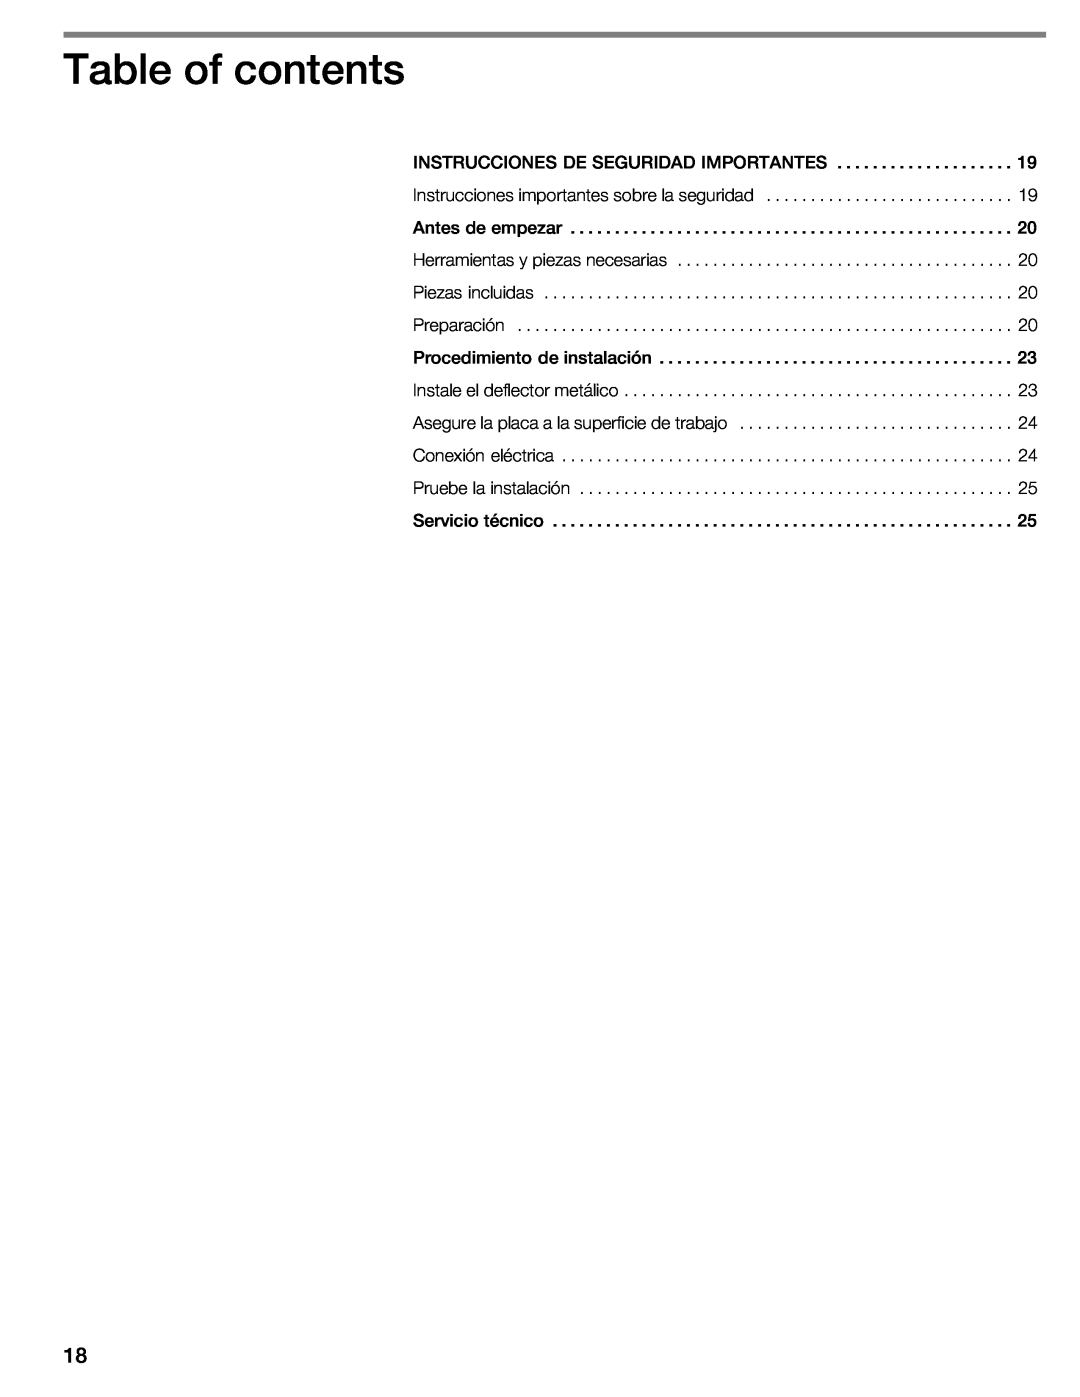 Thermador CIT30 manual Table of contents, Piezas incluidas 